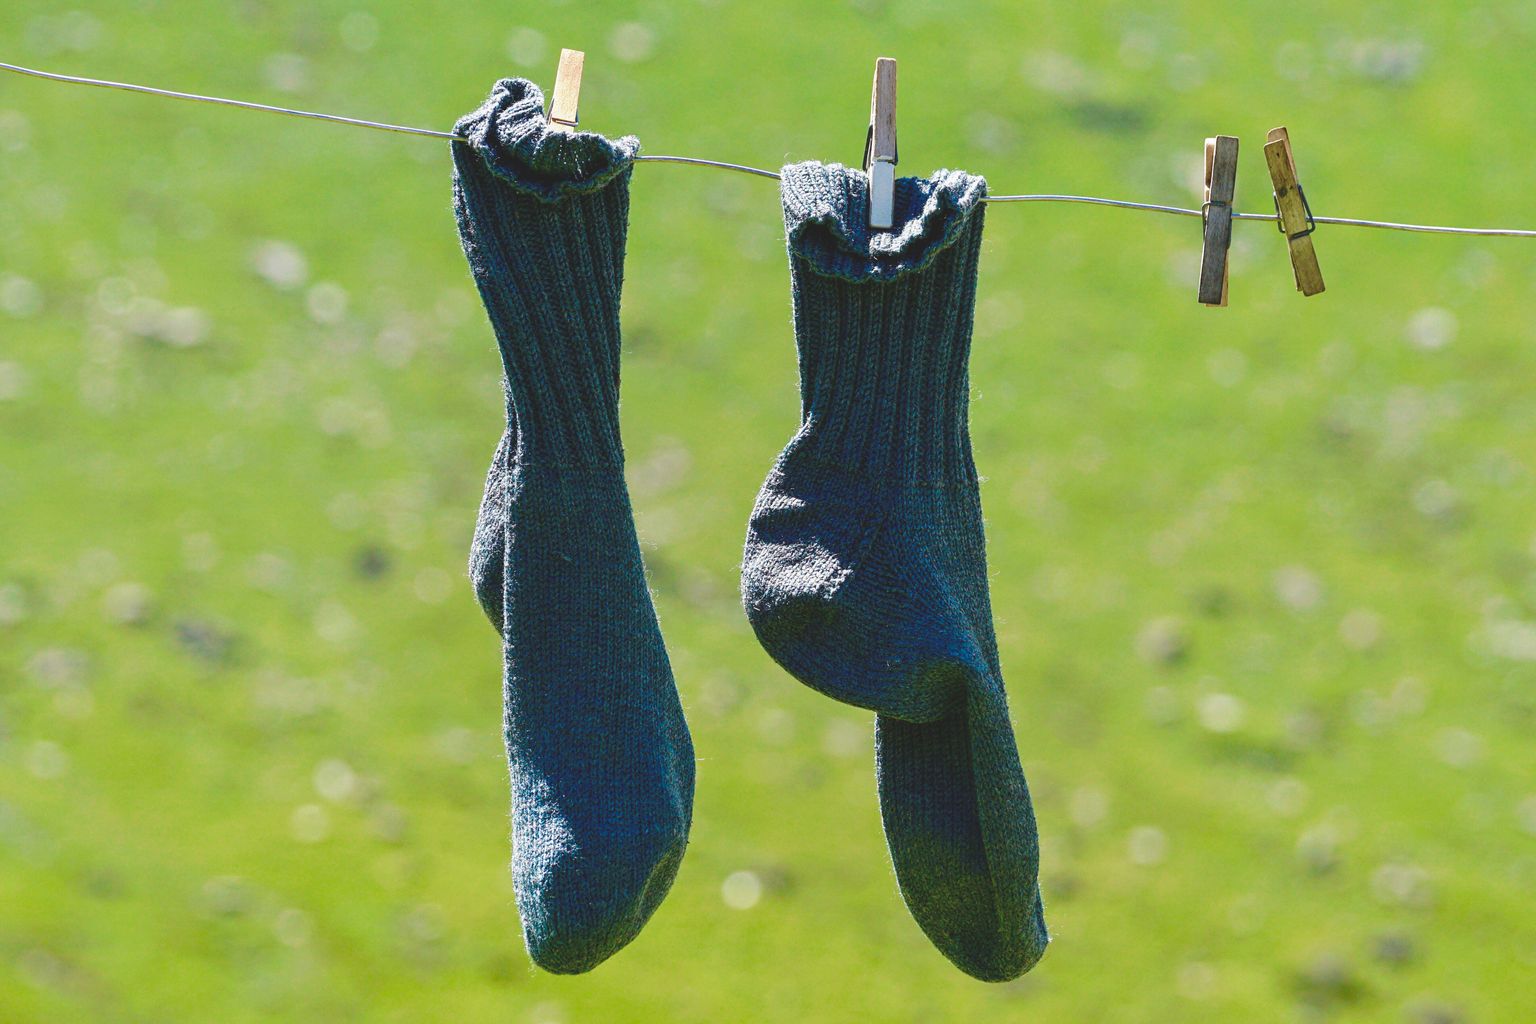 Vanu sokke parandatakse tänapäeval haruharva, seetõttu on oluline neile ka muid kasutusvõimalusi leida. Pilt on illustreeriv.